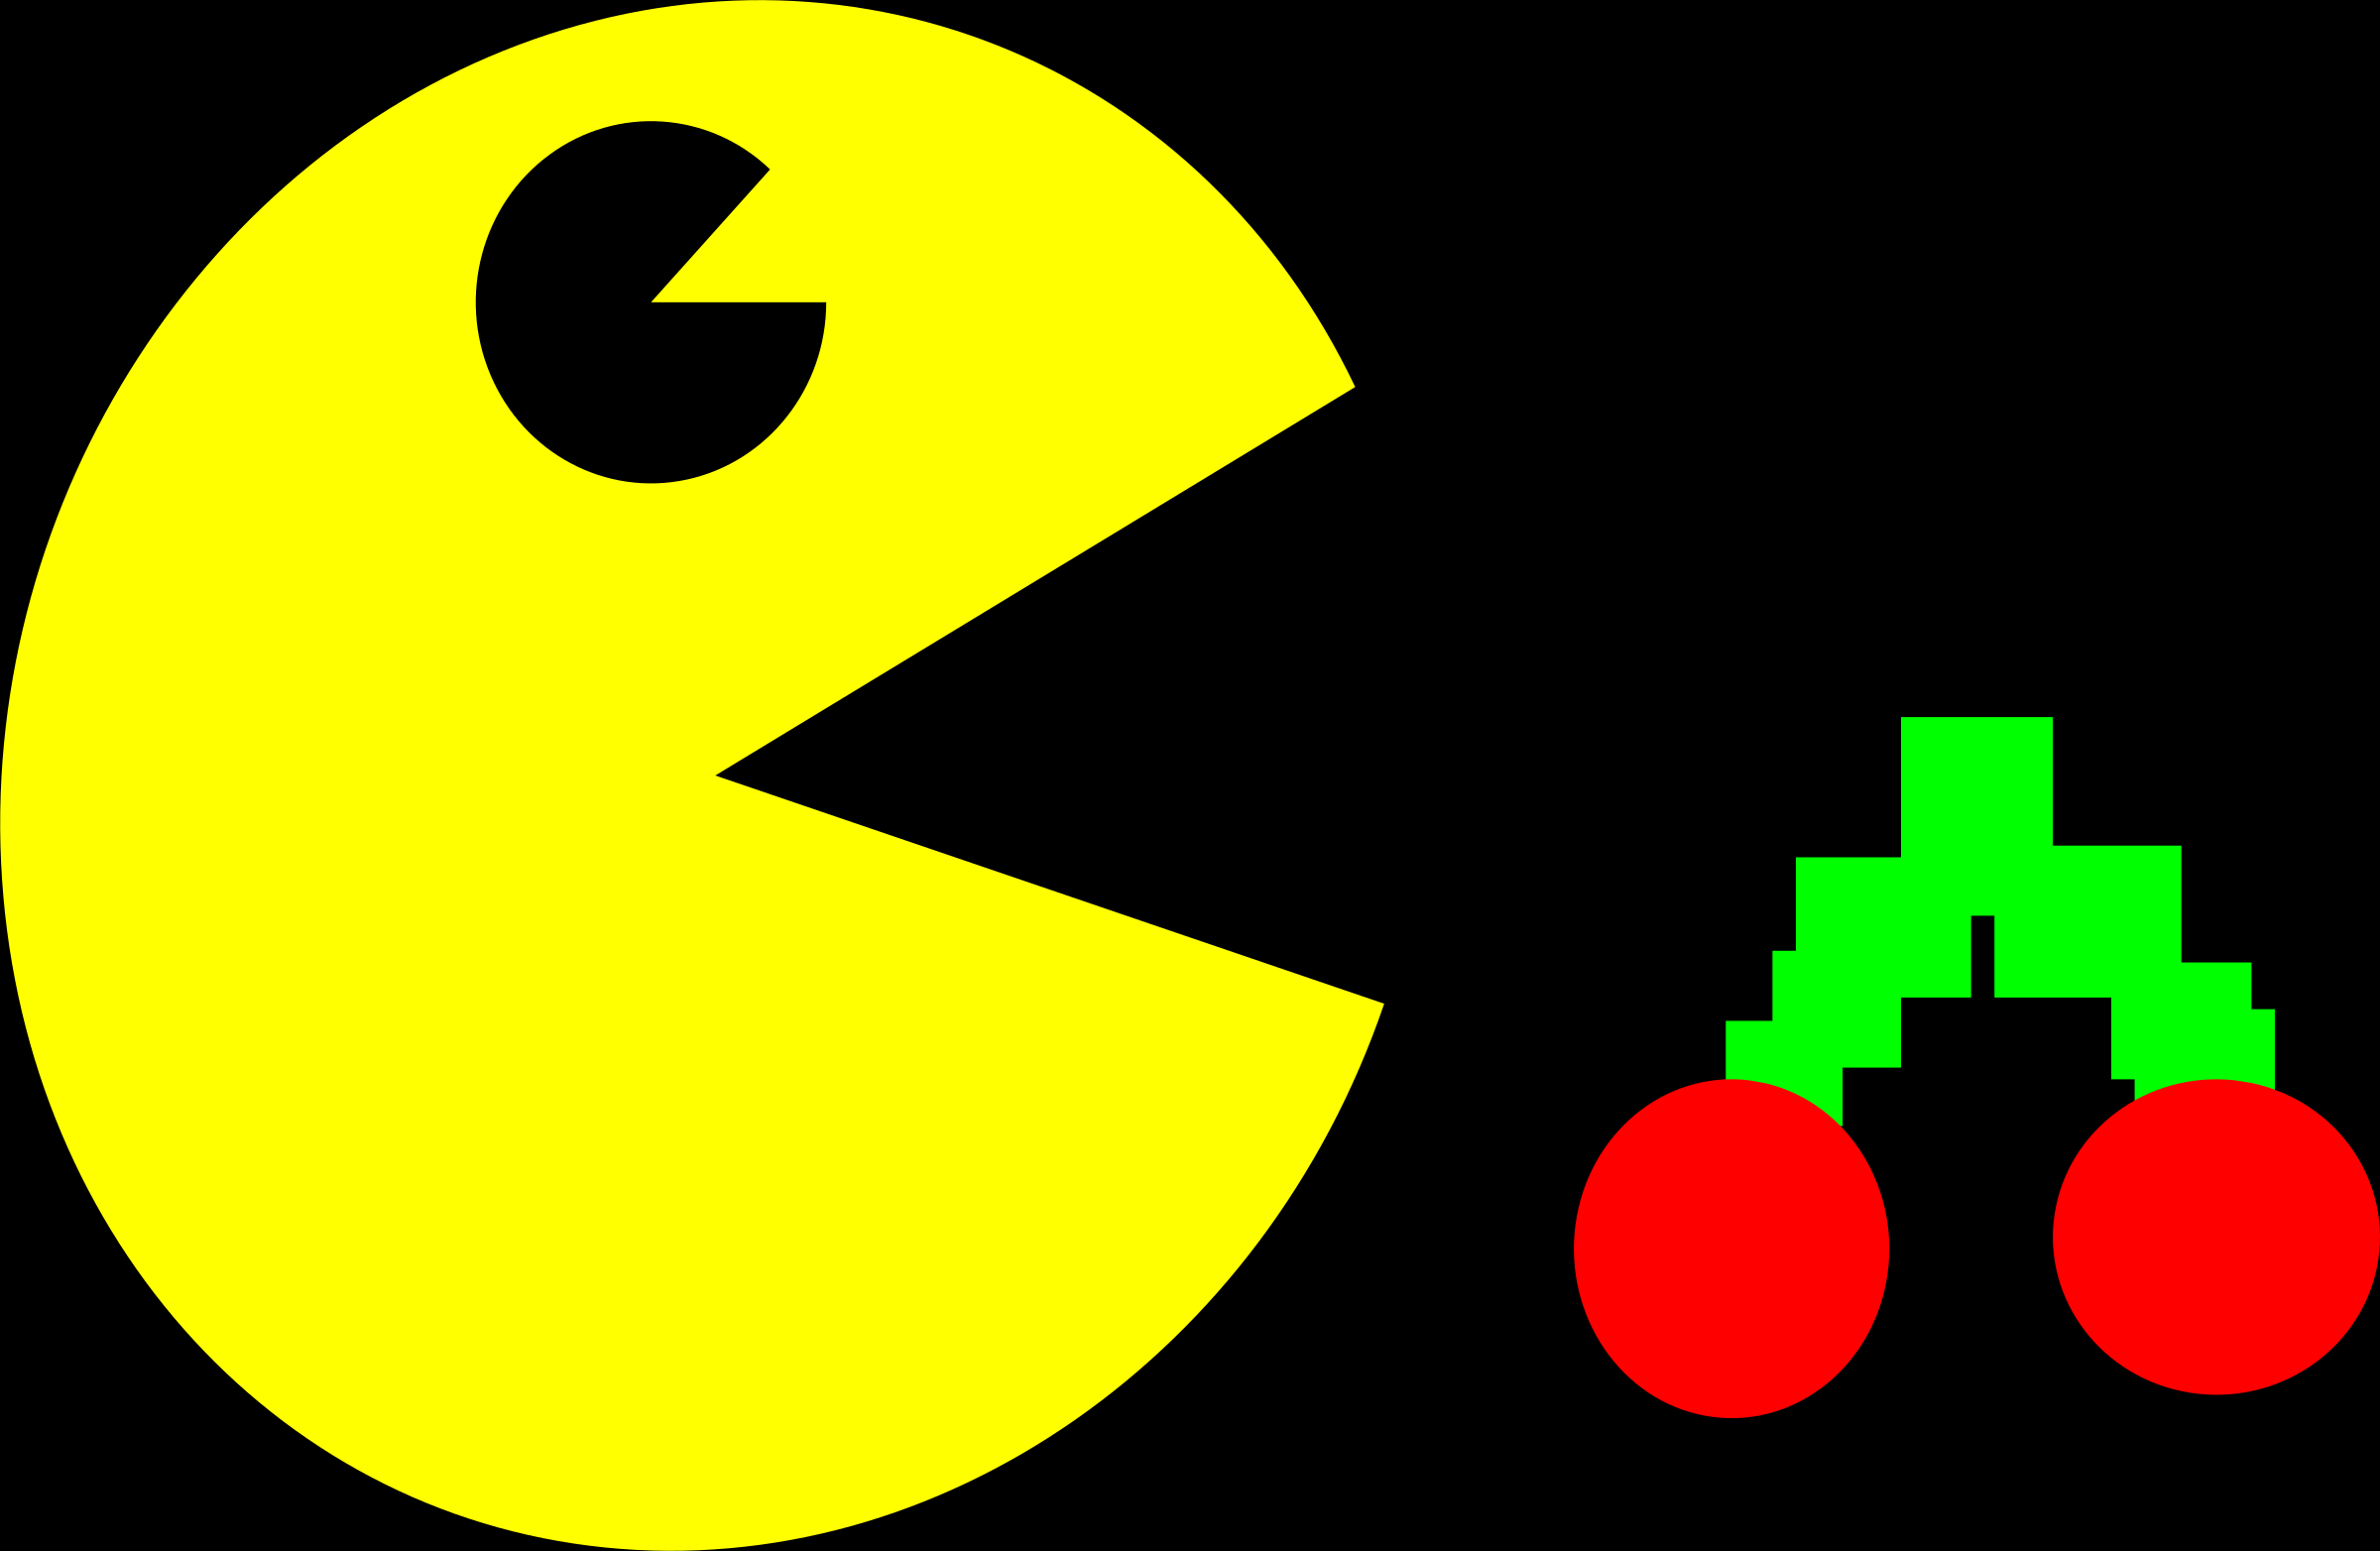 Pac man game. Пэкмен игра. Pacman герои. Персонажи в игре Пэкмэн. Gfr5vfy.